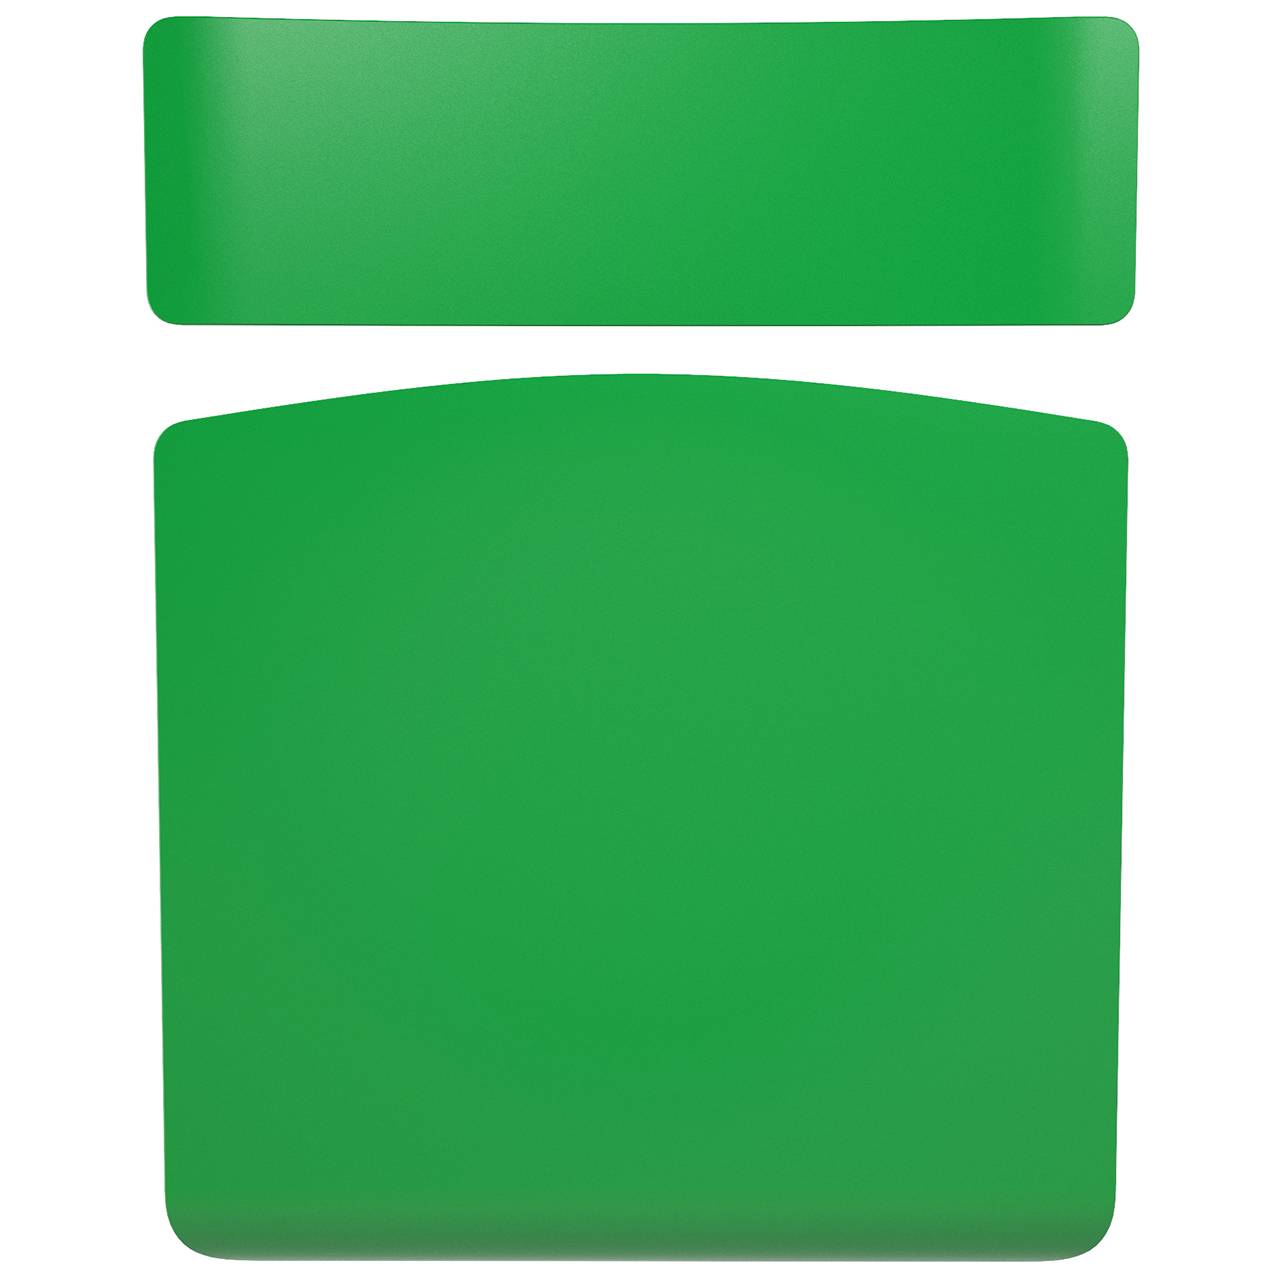 Стул ученический регулируемый (гр. 2-4, 3-5, 4-6 или 5-7) коричневый Зеленый 4-6 прямоугольная